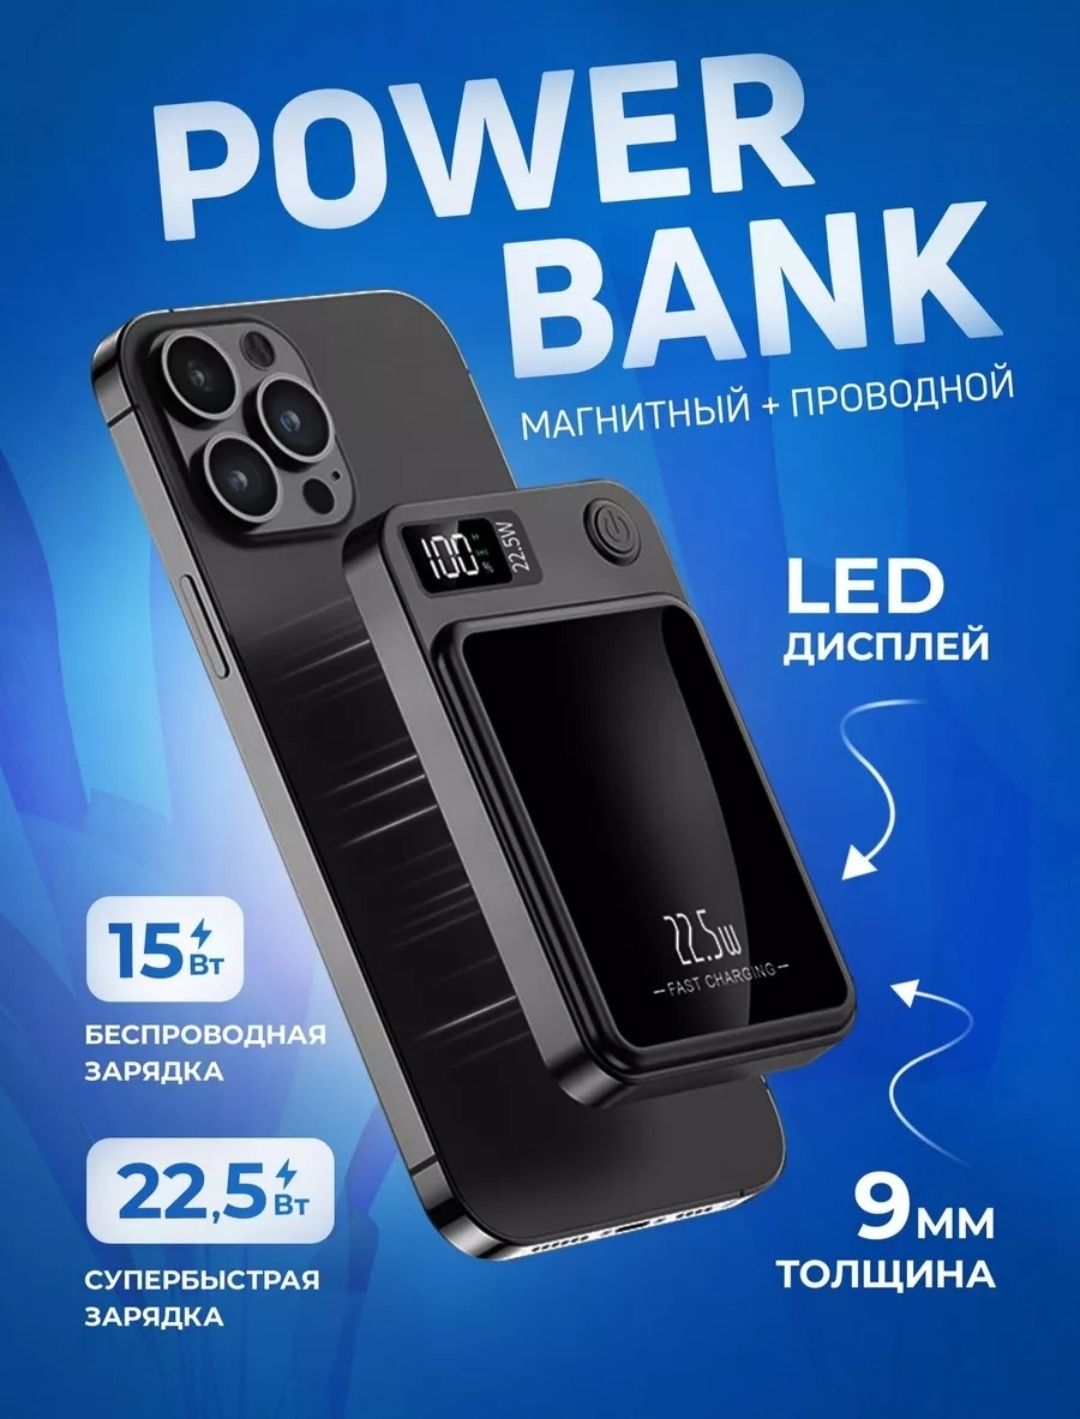 Power Bank для iPhone. Беспроводная и проводная зарядка 10.000 мА/ч